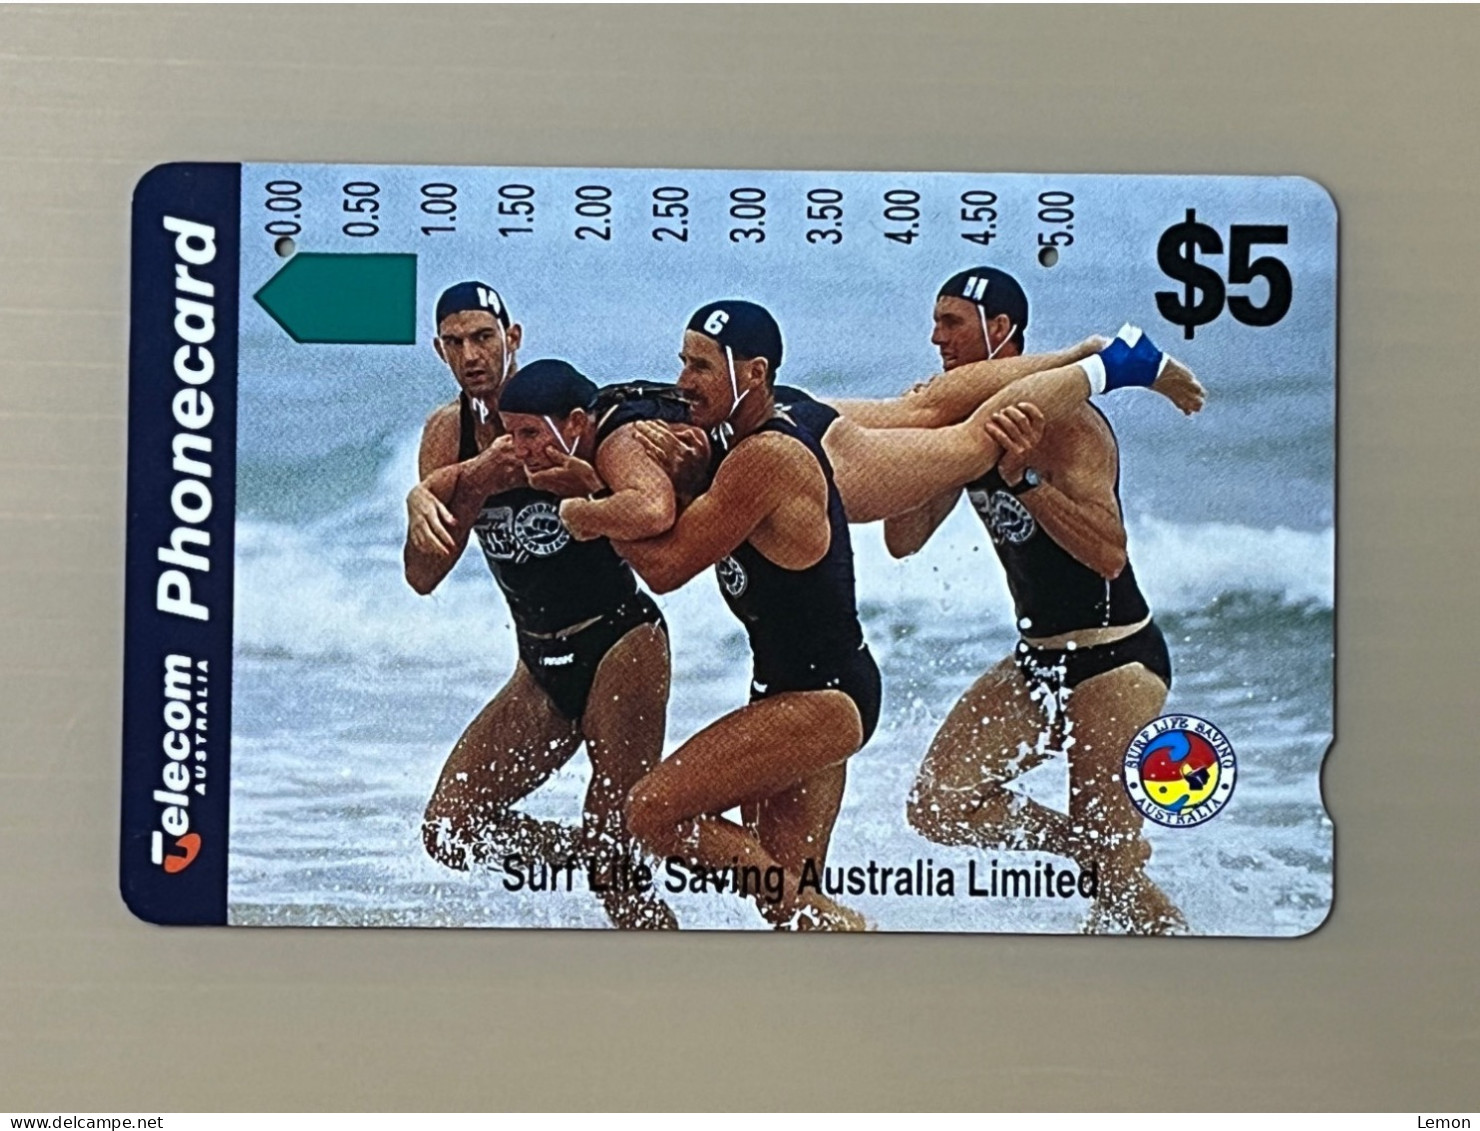 Australia Phonecard, Surf Lite Saving Australia Limited, 1 Used Card - Australia